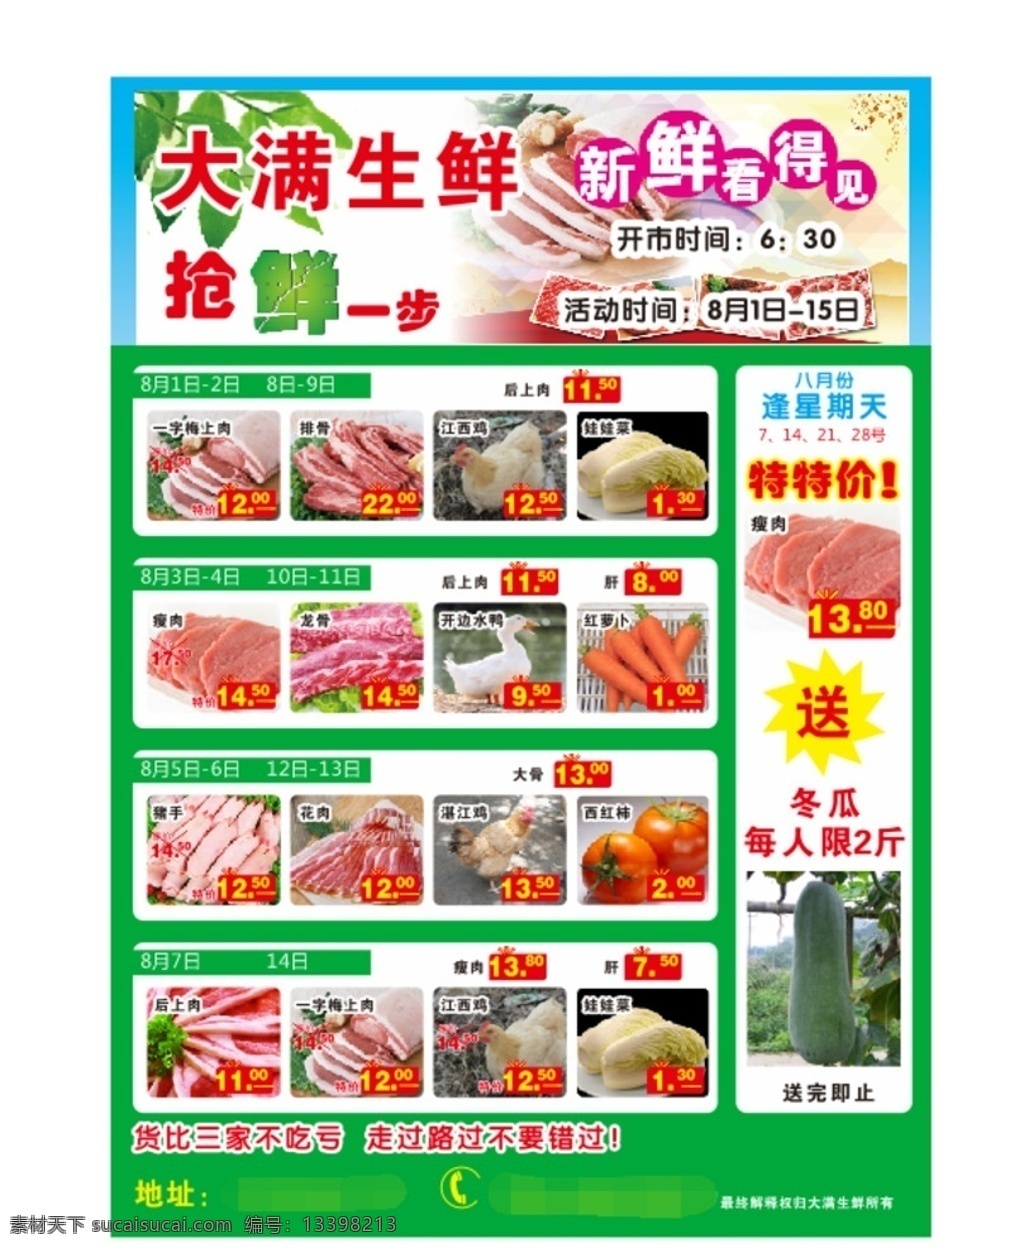 超市 促销 宣传单 青菜 猪肉 市场宣传单 青菜价目表 猪肉价目表 超市促销 超市价目表 每日优惠 饮食 价目表 dm宣传单